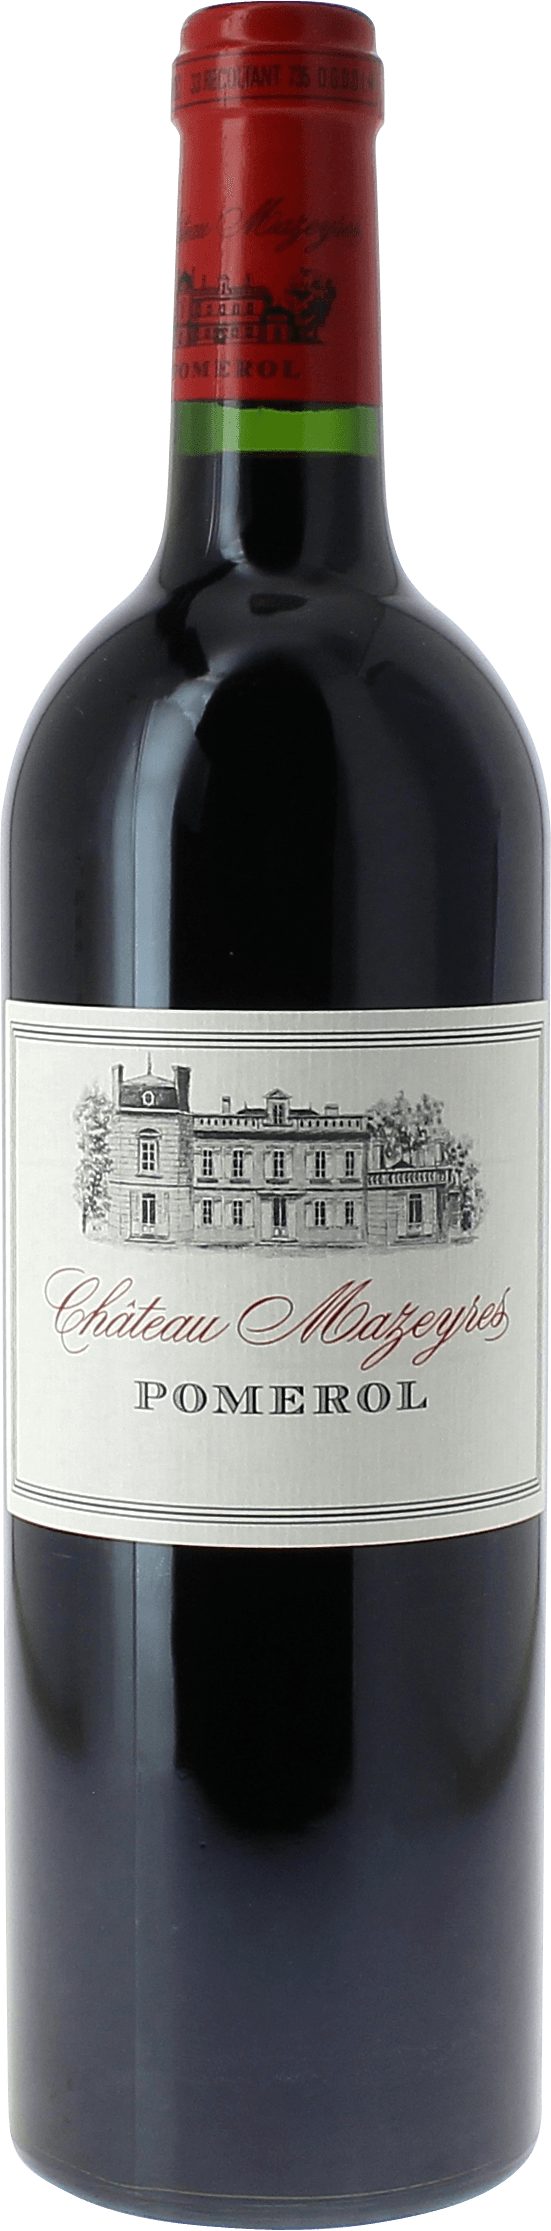 Mazeyres 2015  Pomerol, Bordeaux rouge